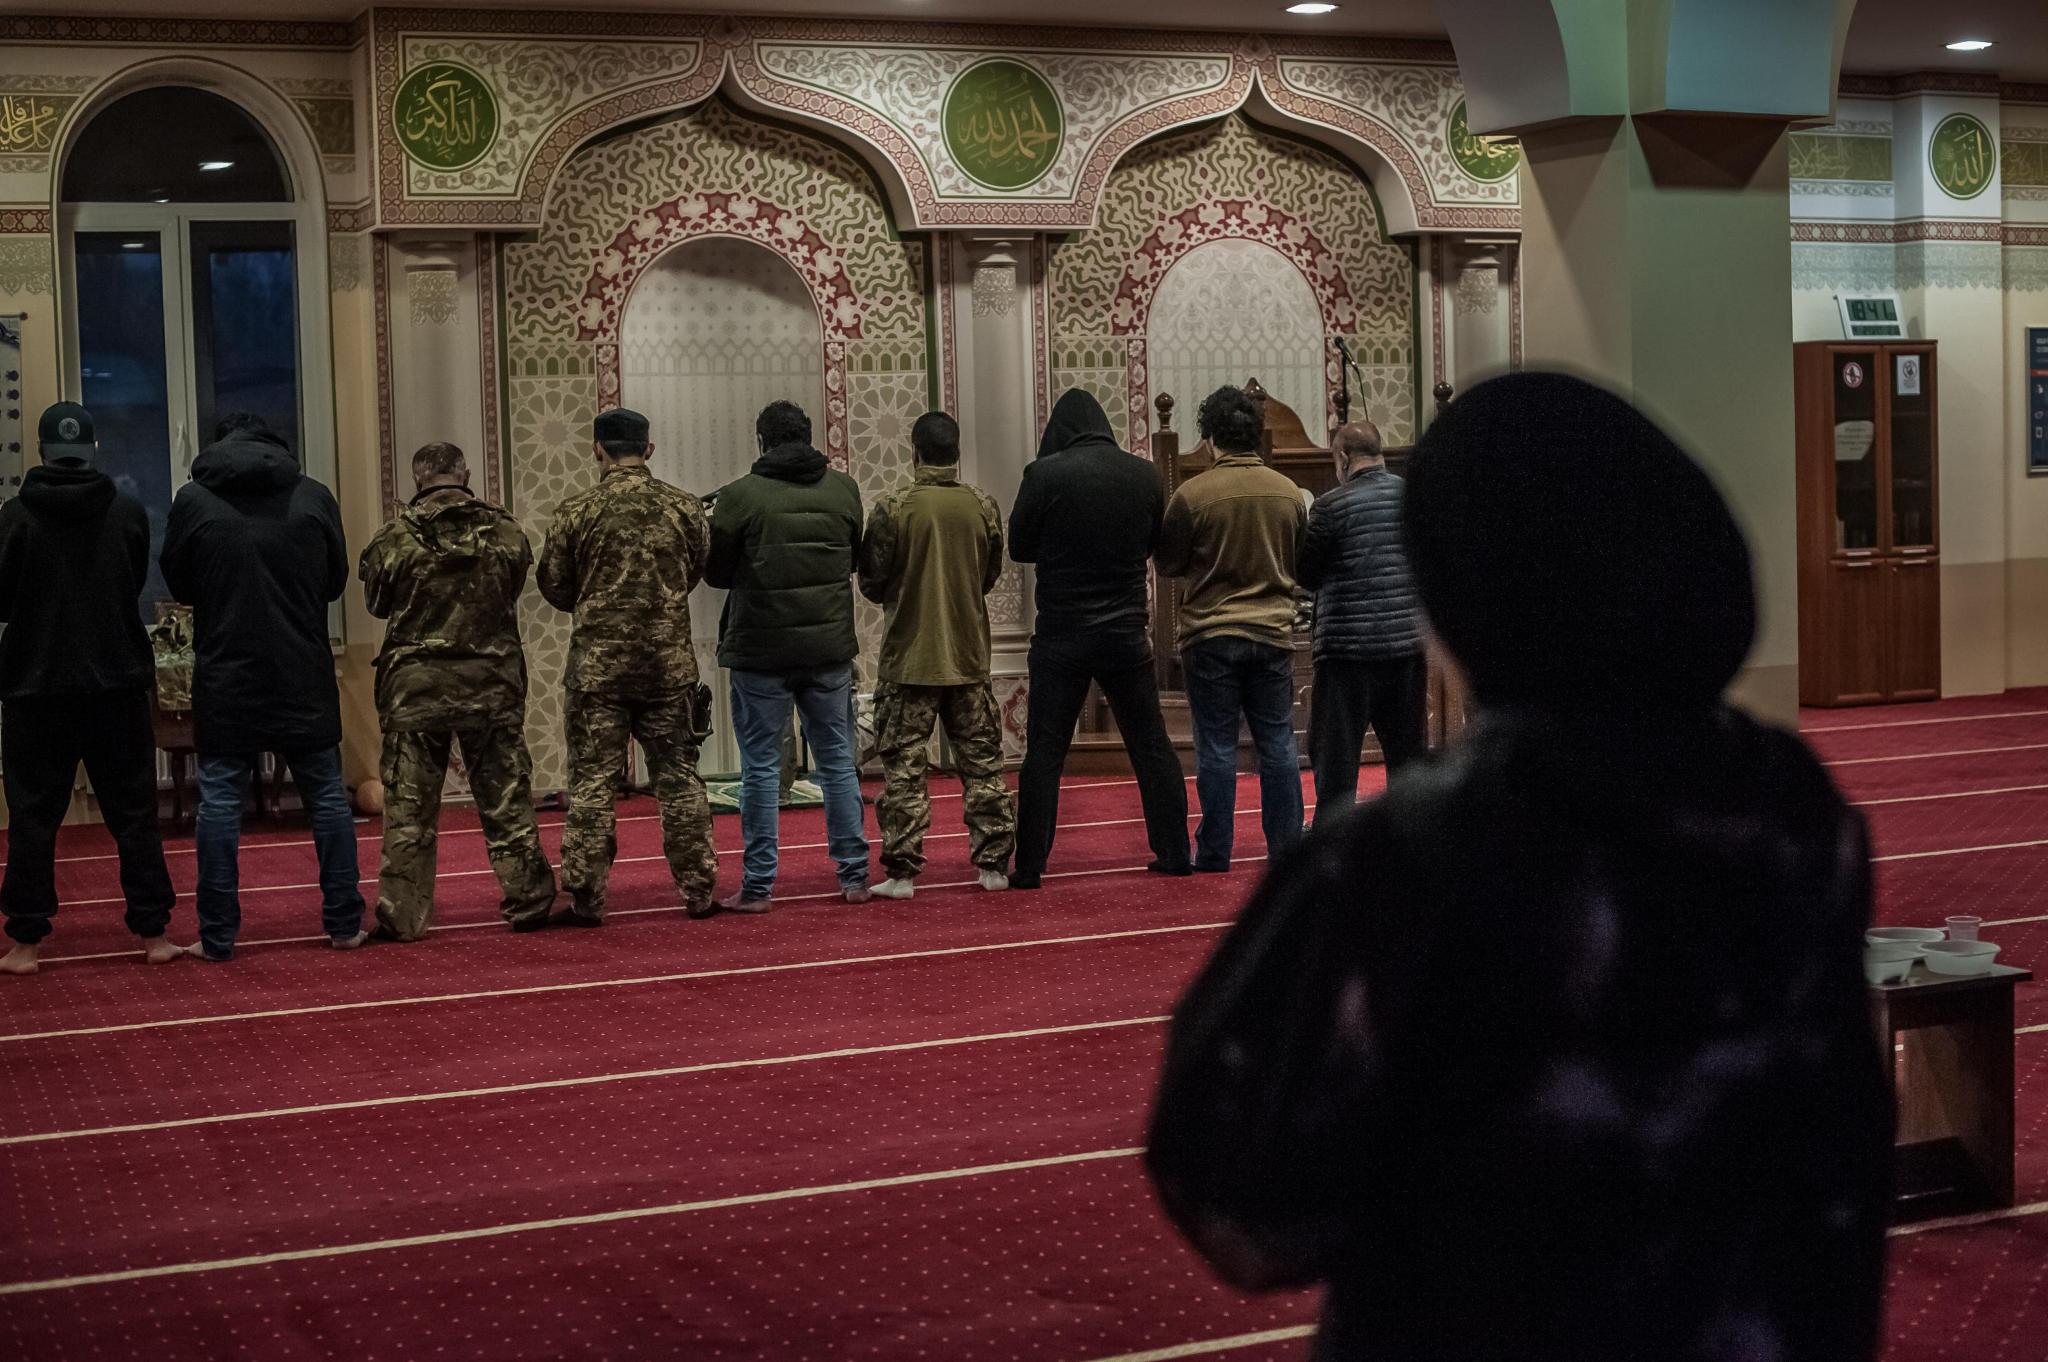   »Wir versuchen, ein gutes Beispiel für islamische Gesellschaft zu sein« | Muslimisches Leben im Krieg  